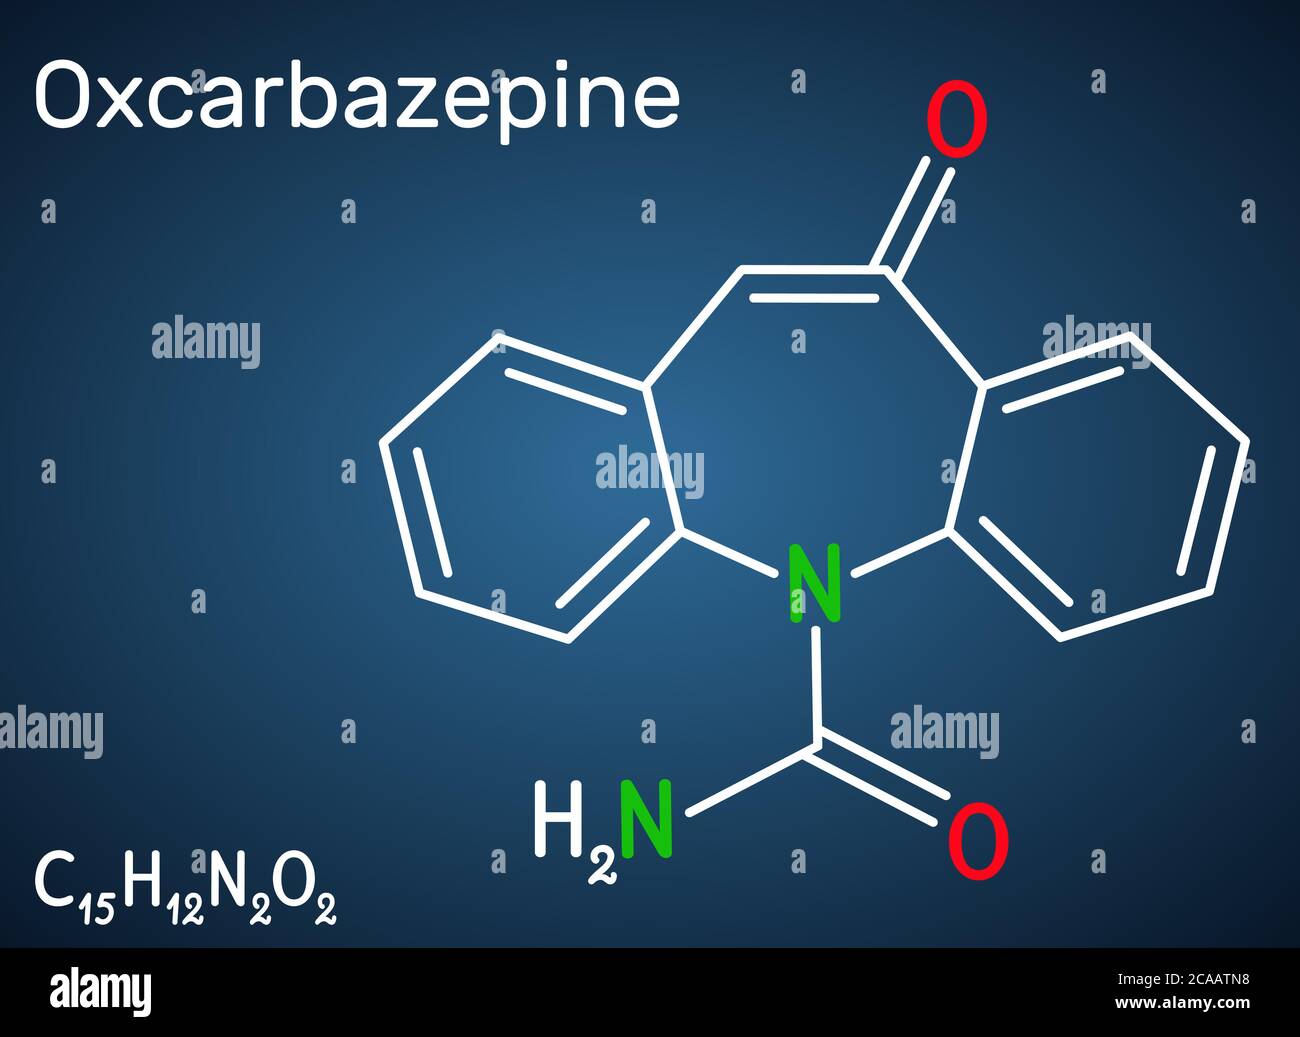 Oxcarbazepine, molécule C15H12N2O2. Il est antiépileptique, anticonvulsant médicament utilisé dans le traitement des crises, l'épilepsie, le trouble bipolaire. Structure che Illustration de Vecteur